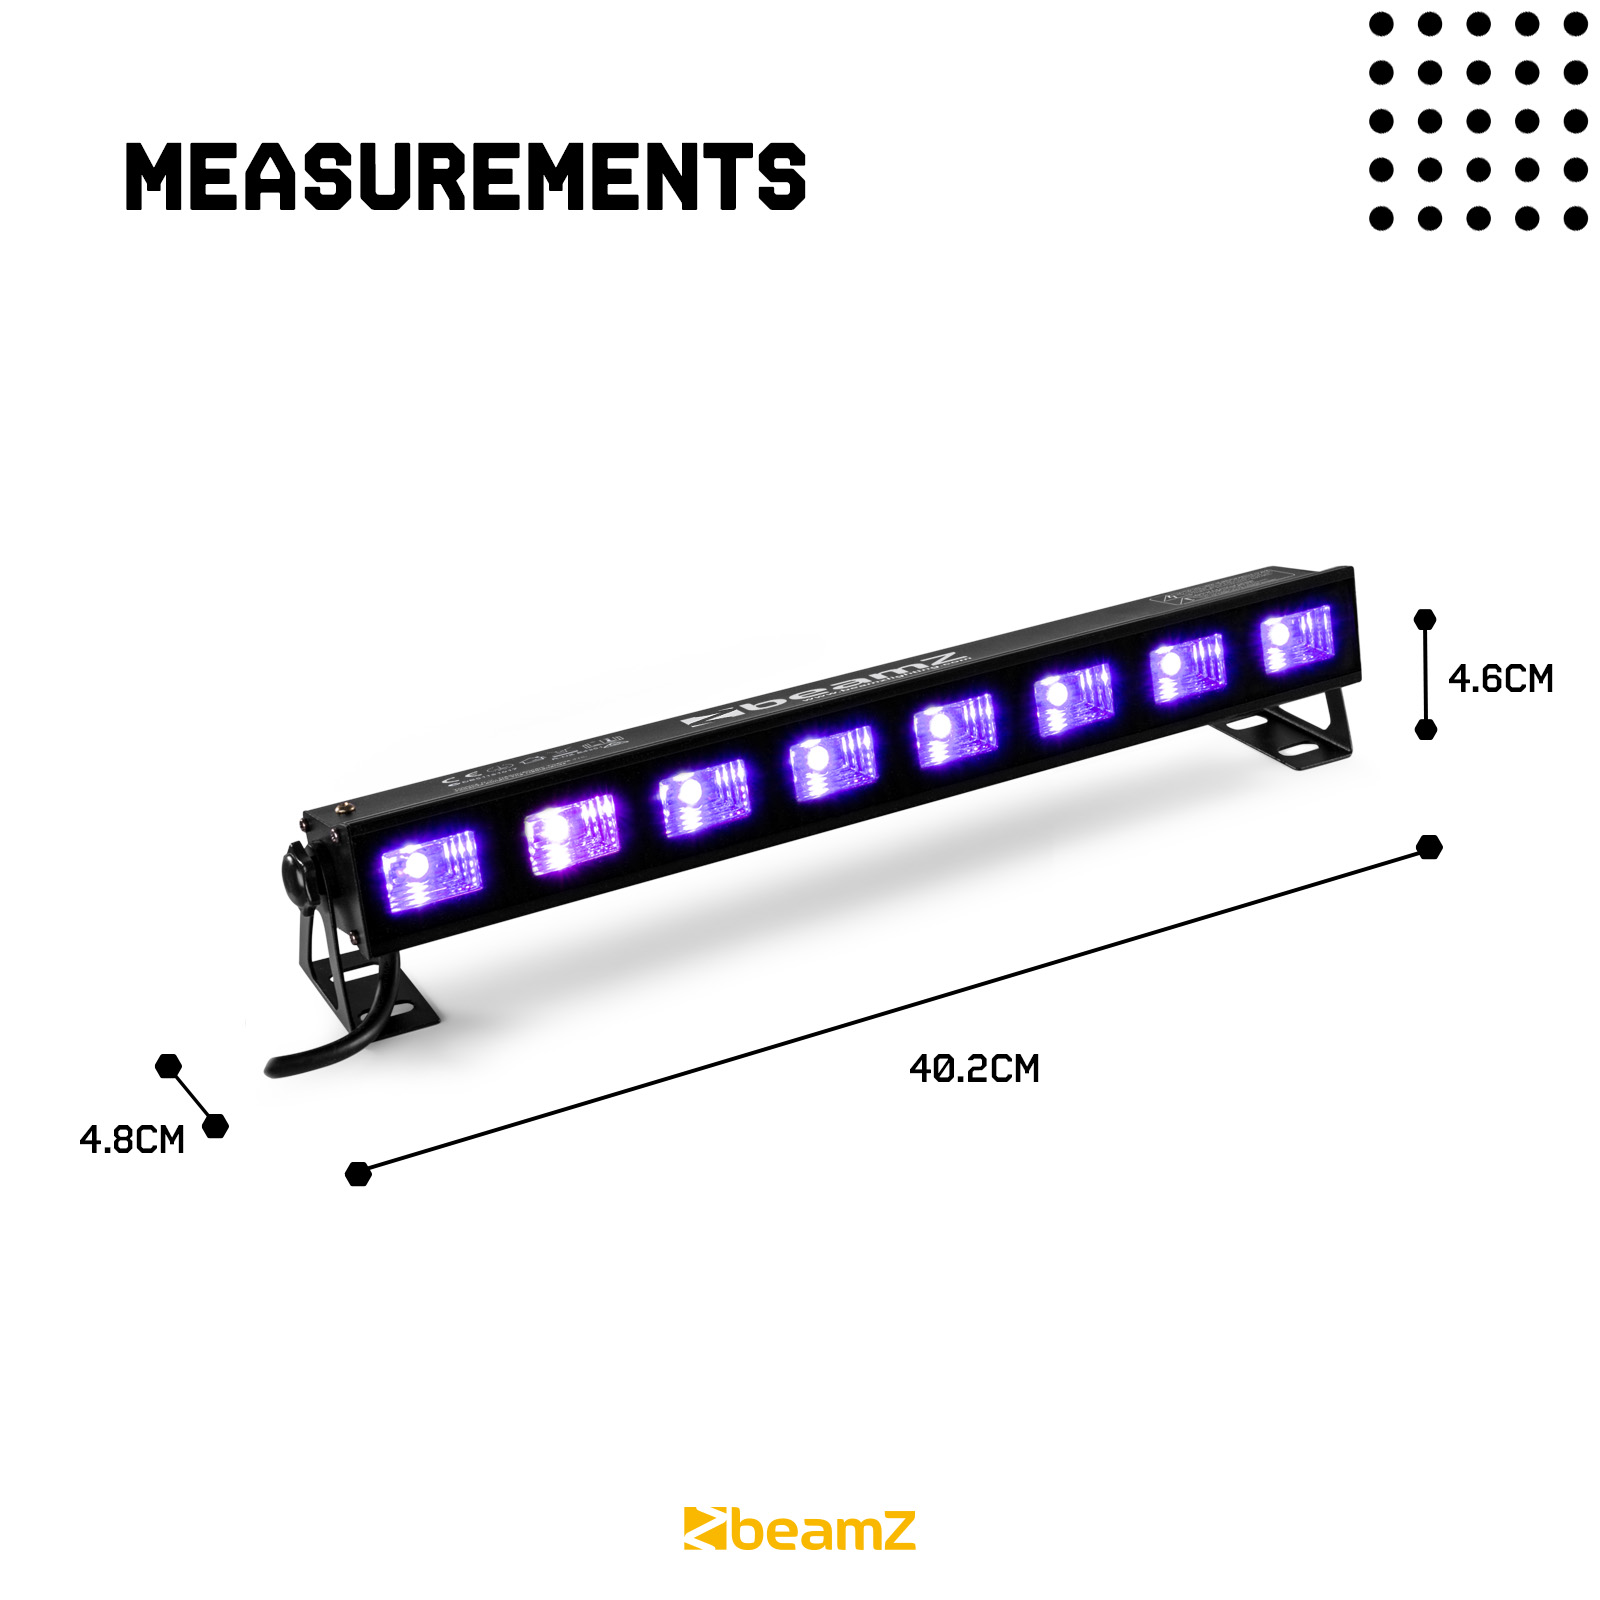 UV LED Bar - 8x 3 Watt UV Blacklight Parabolic Reflector - Sound